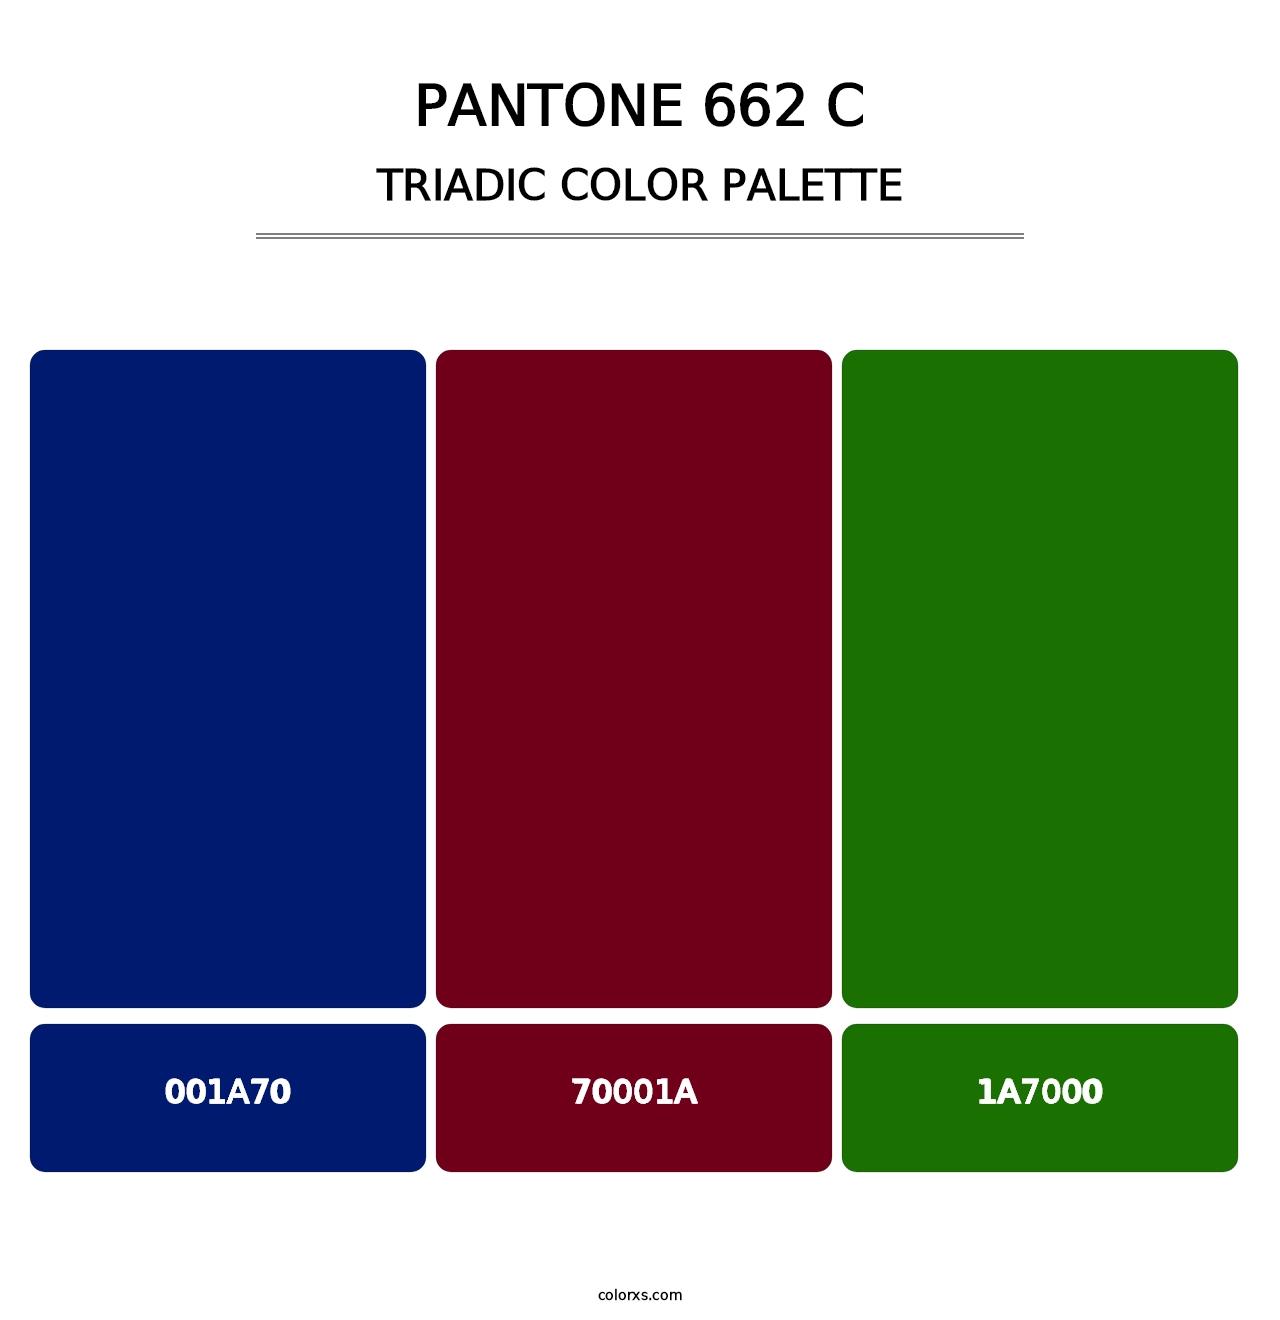 PANTONE 662 C - Triadic Color Palette